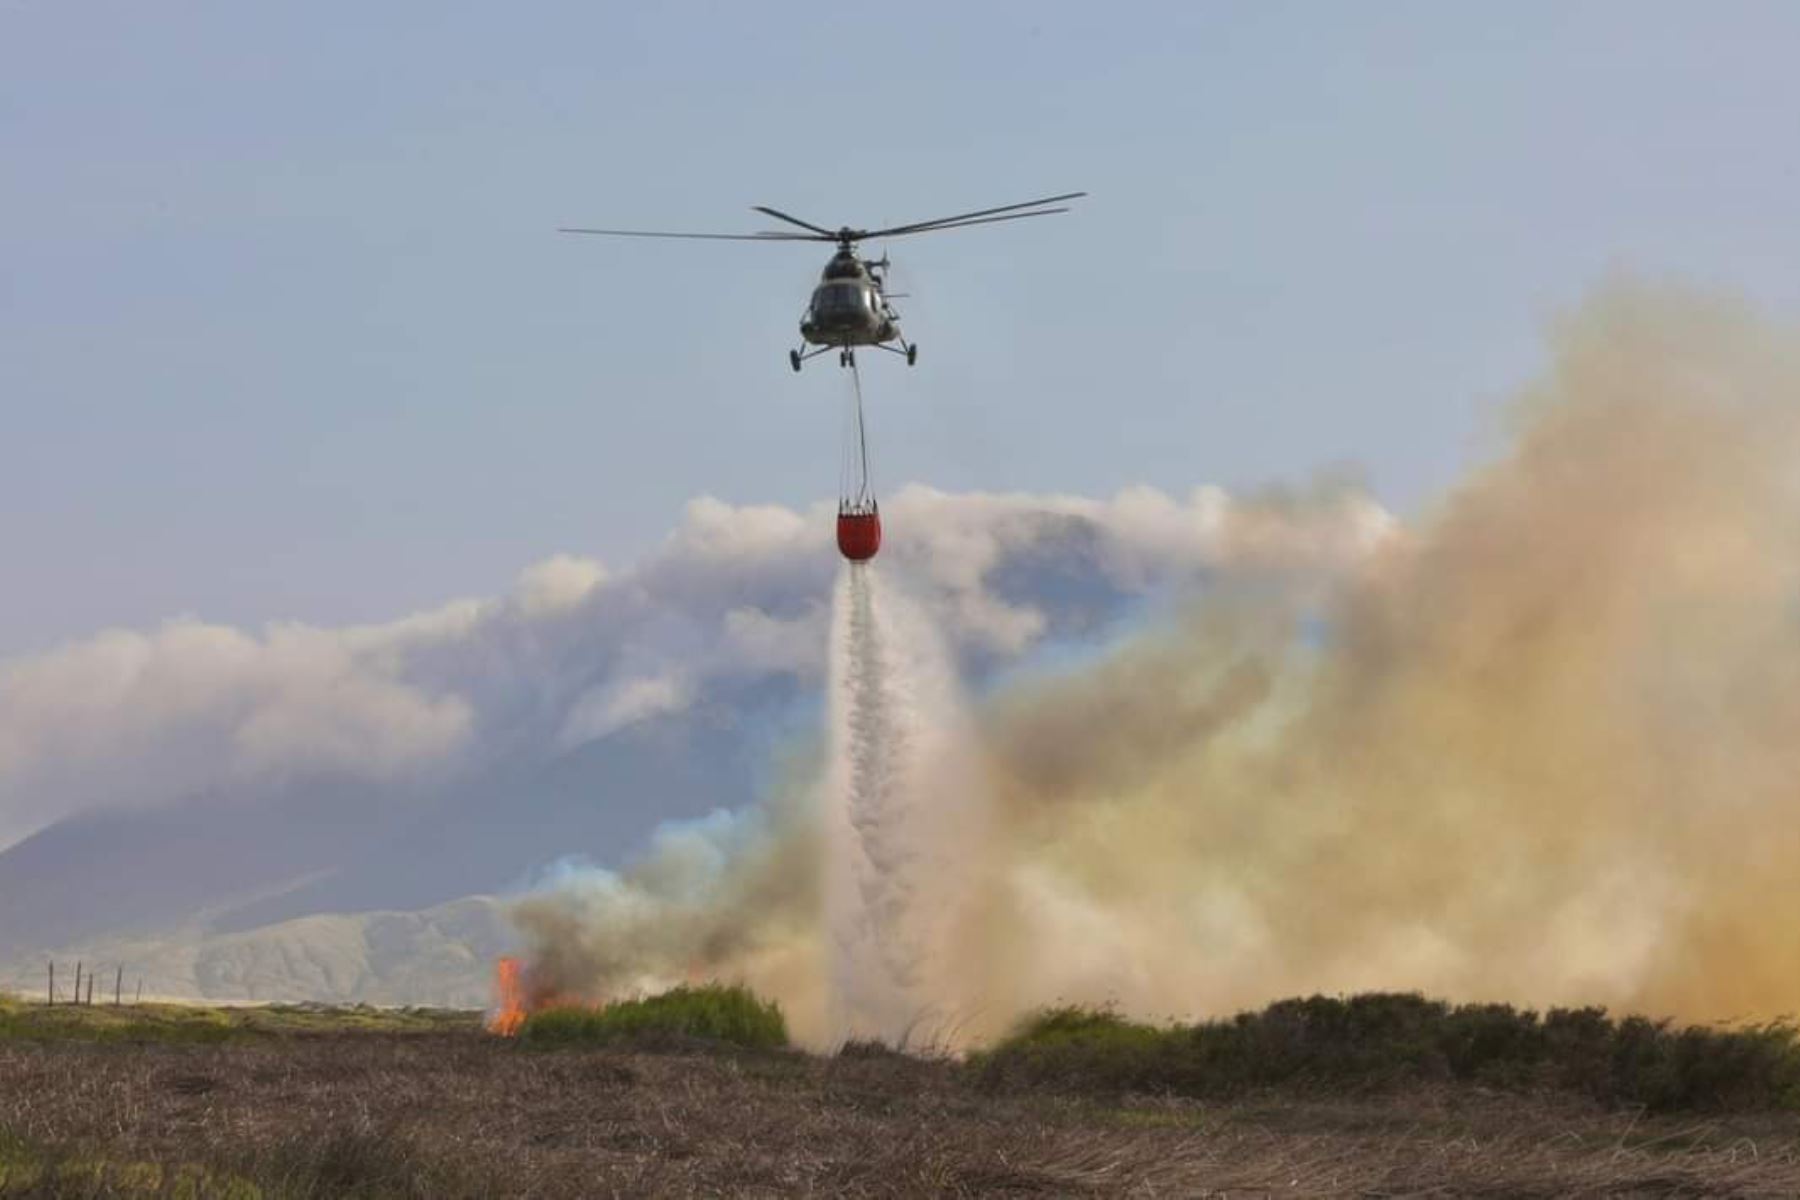 En más de dos horas de operación, las tres aeronaves lograron la descarga de 45,000 litros de agua sobre los focos del incendio, lo que permitió el control posterior de la emergencia. Foto: Difusión Mindef